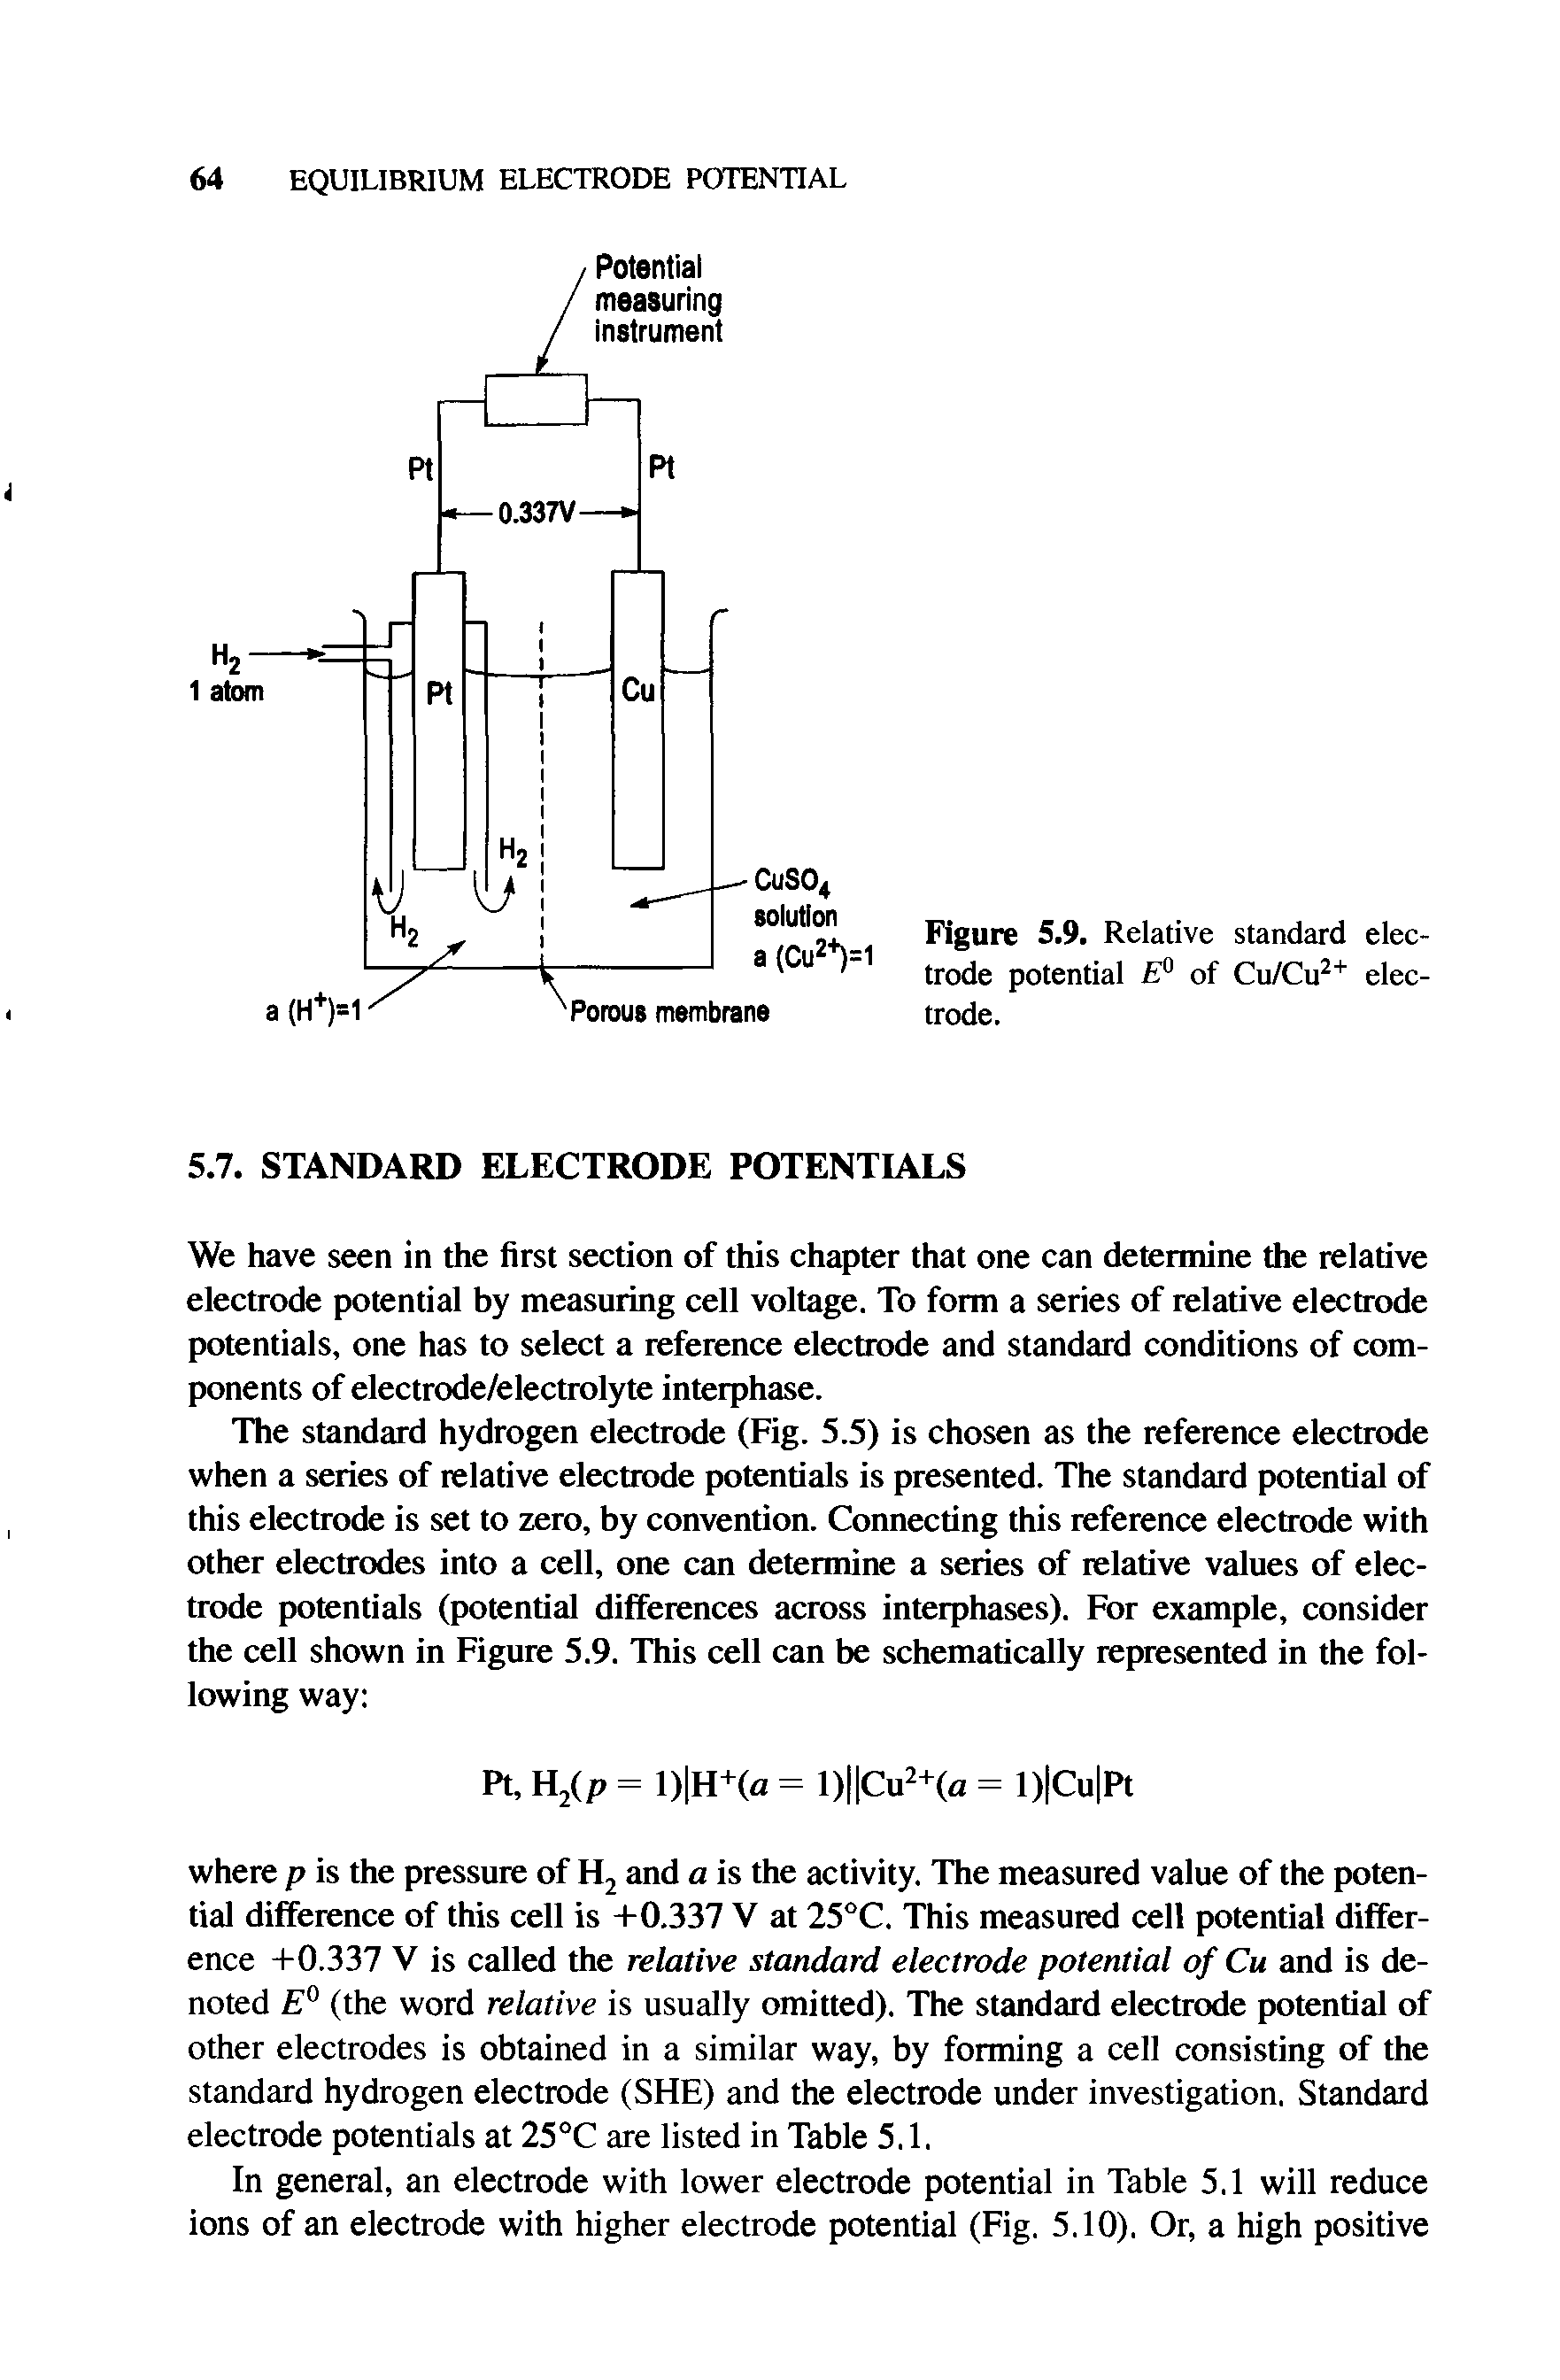 Figure 5.9. Relative standard electrode potential E° of Cu/Cu2+ electrode.